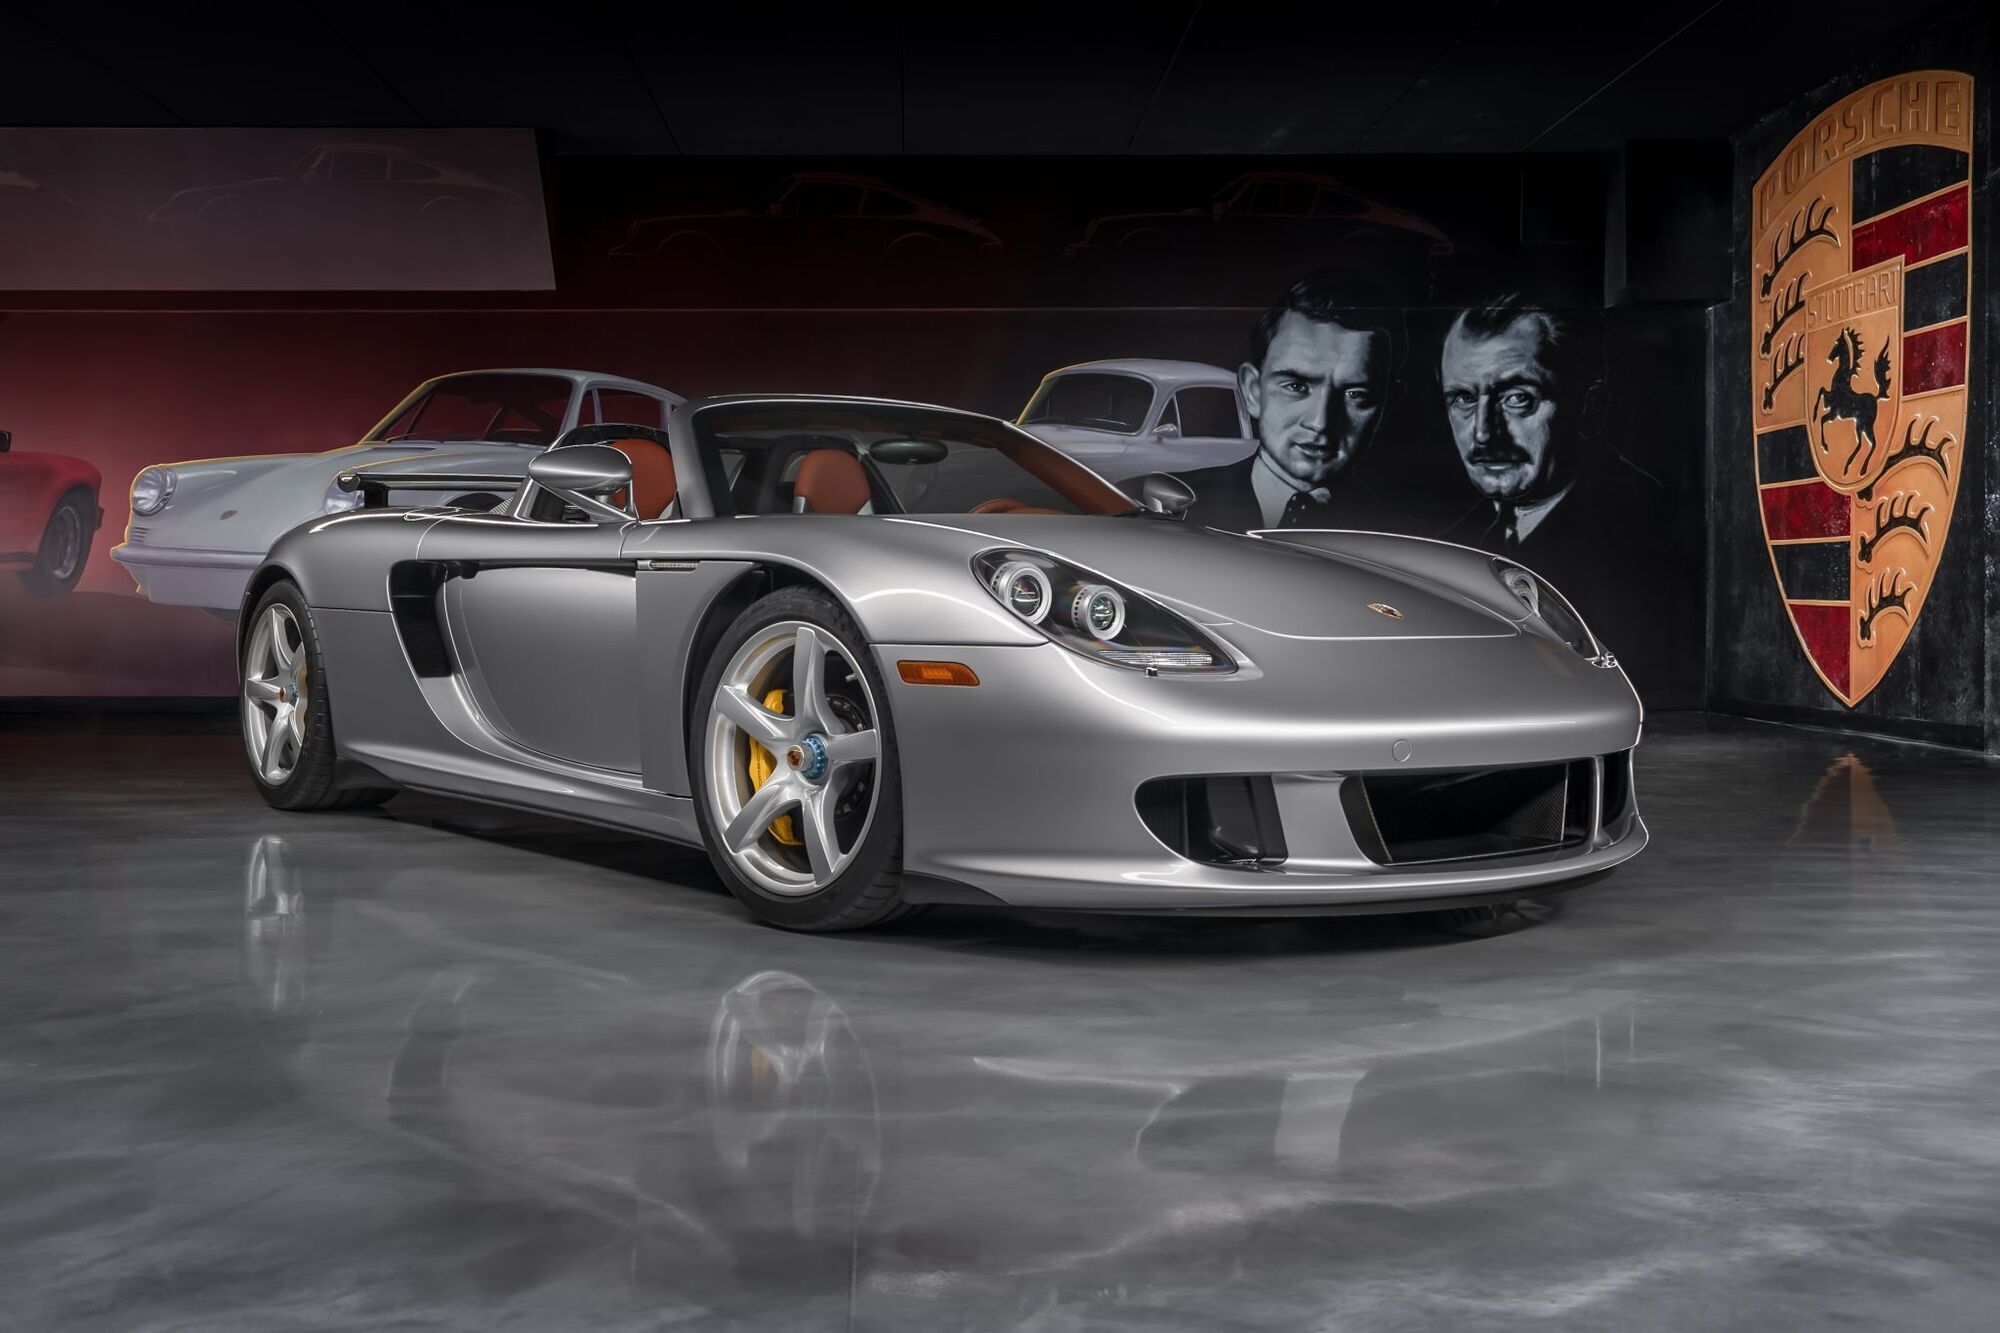 Porsche Carrera GT 2005 года выпуска приобрели за рекордно высокую цену в $1,9 млн